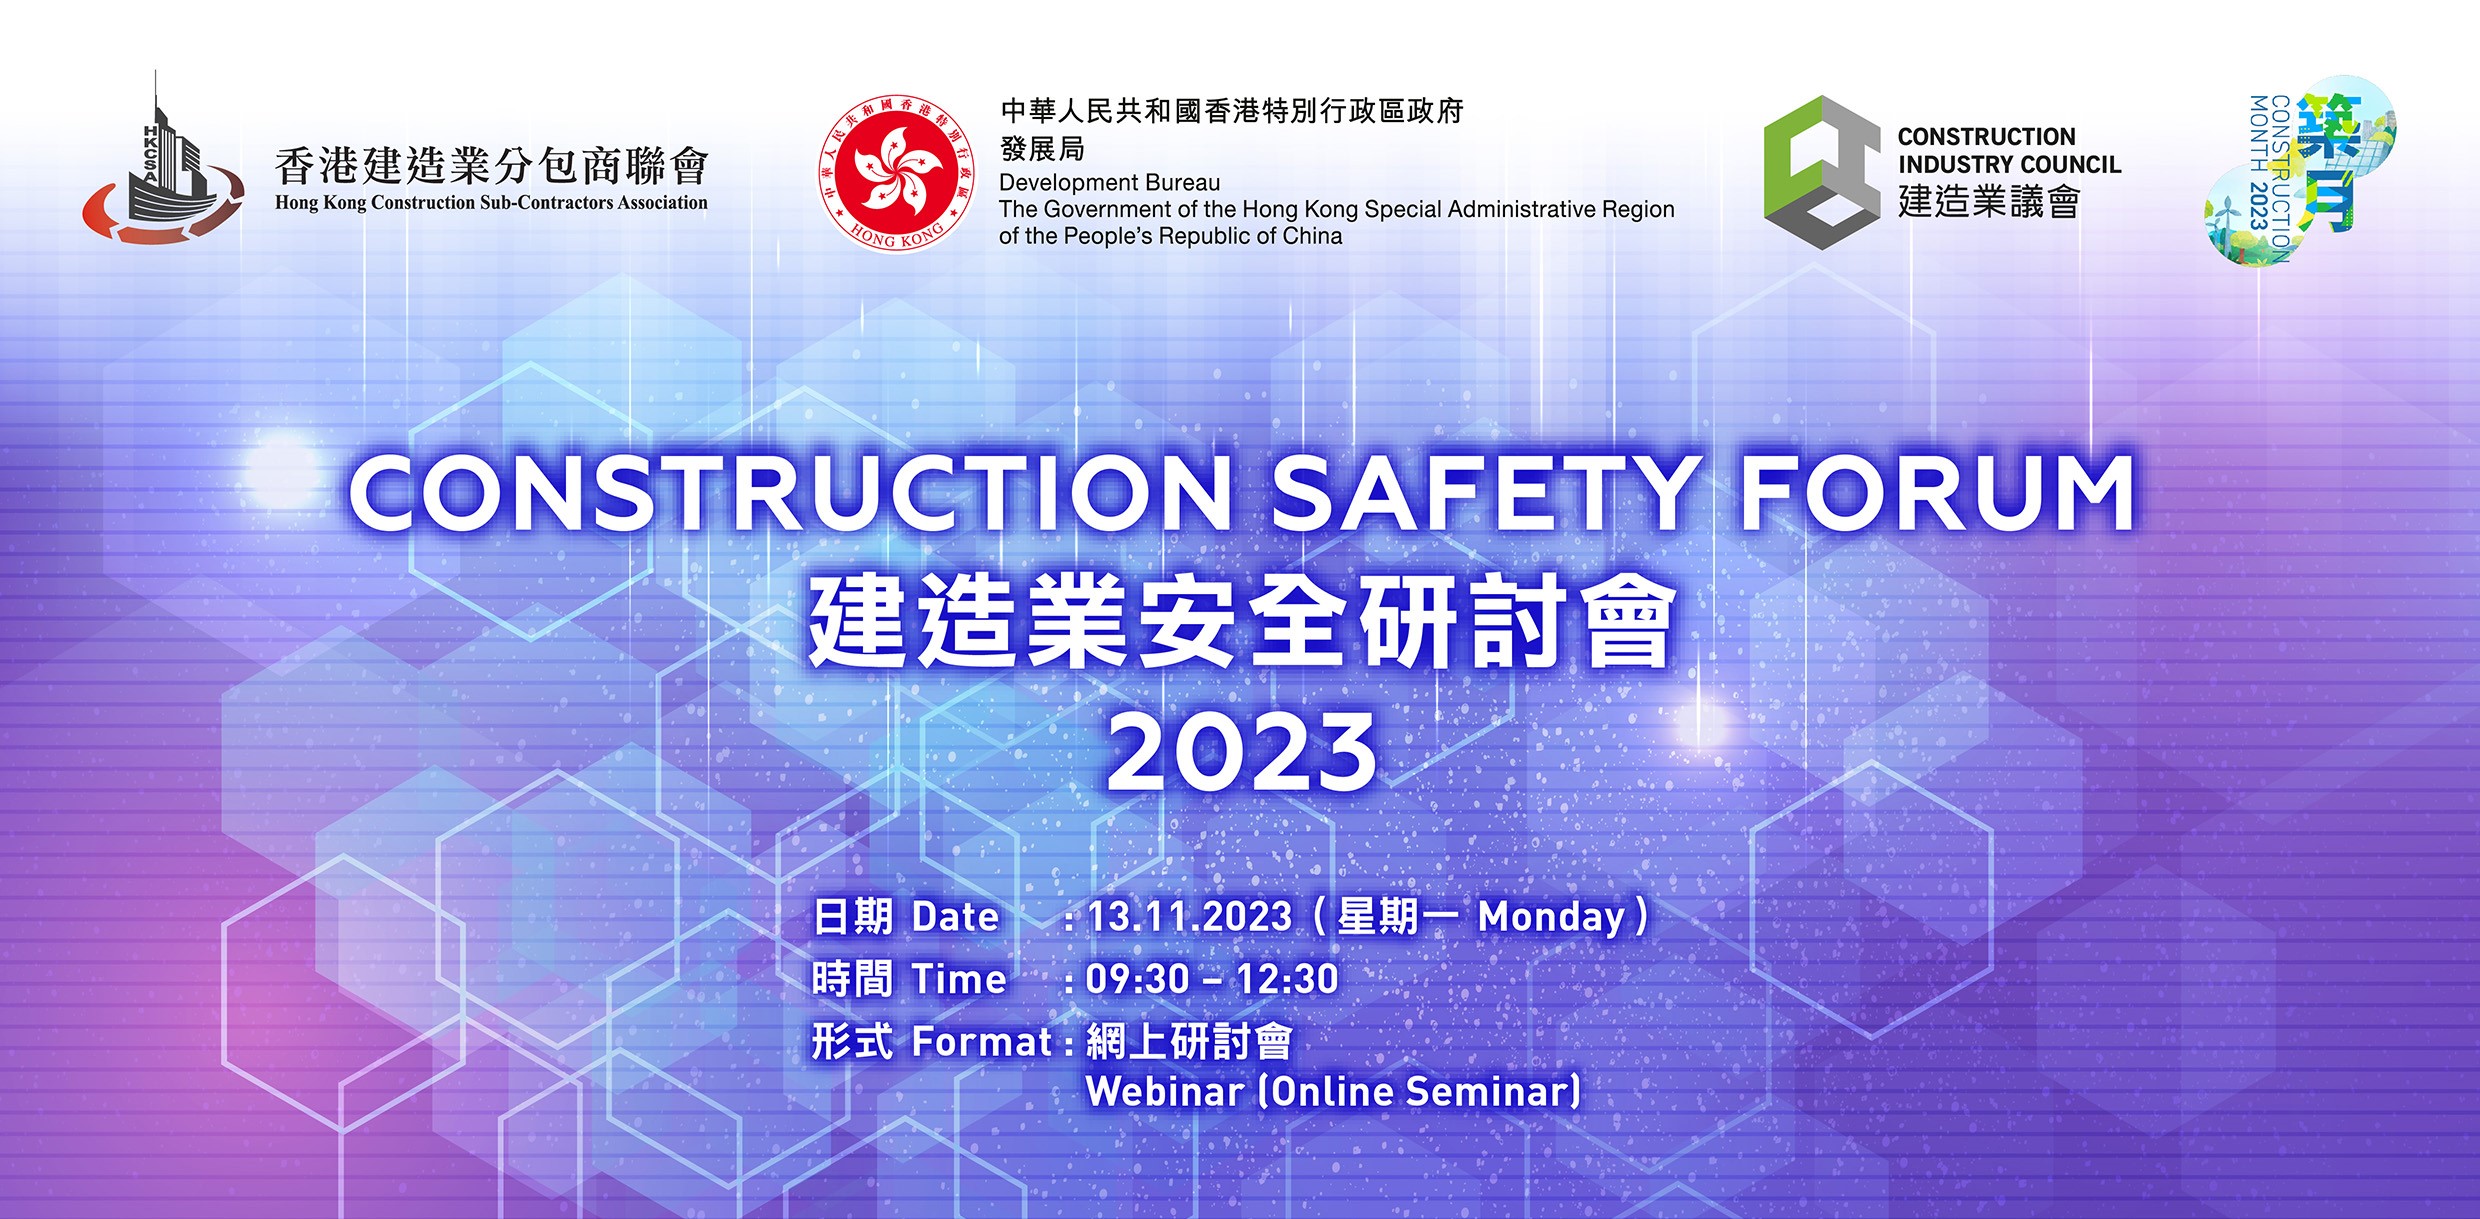 Safety Forum 2023 banner_r1.jpg